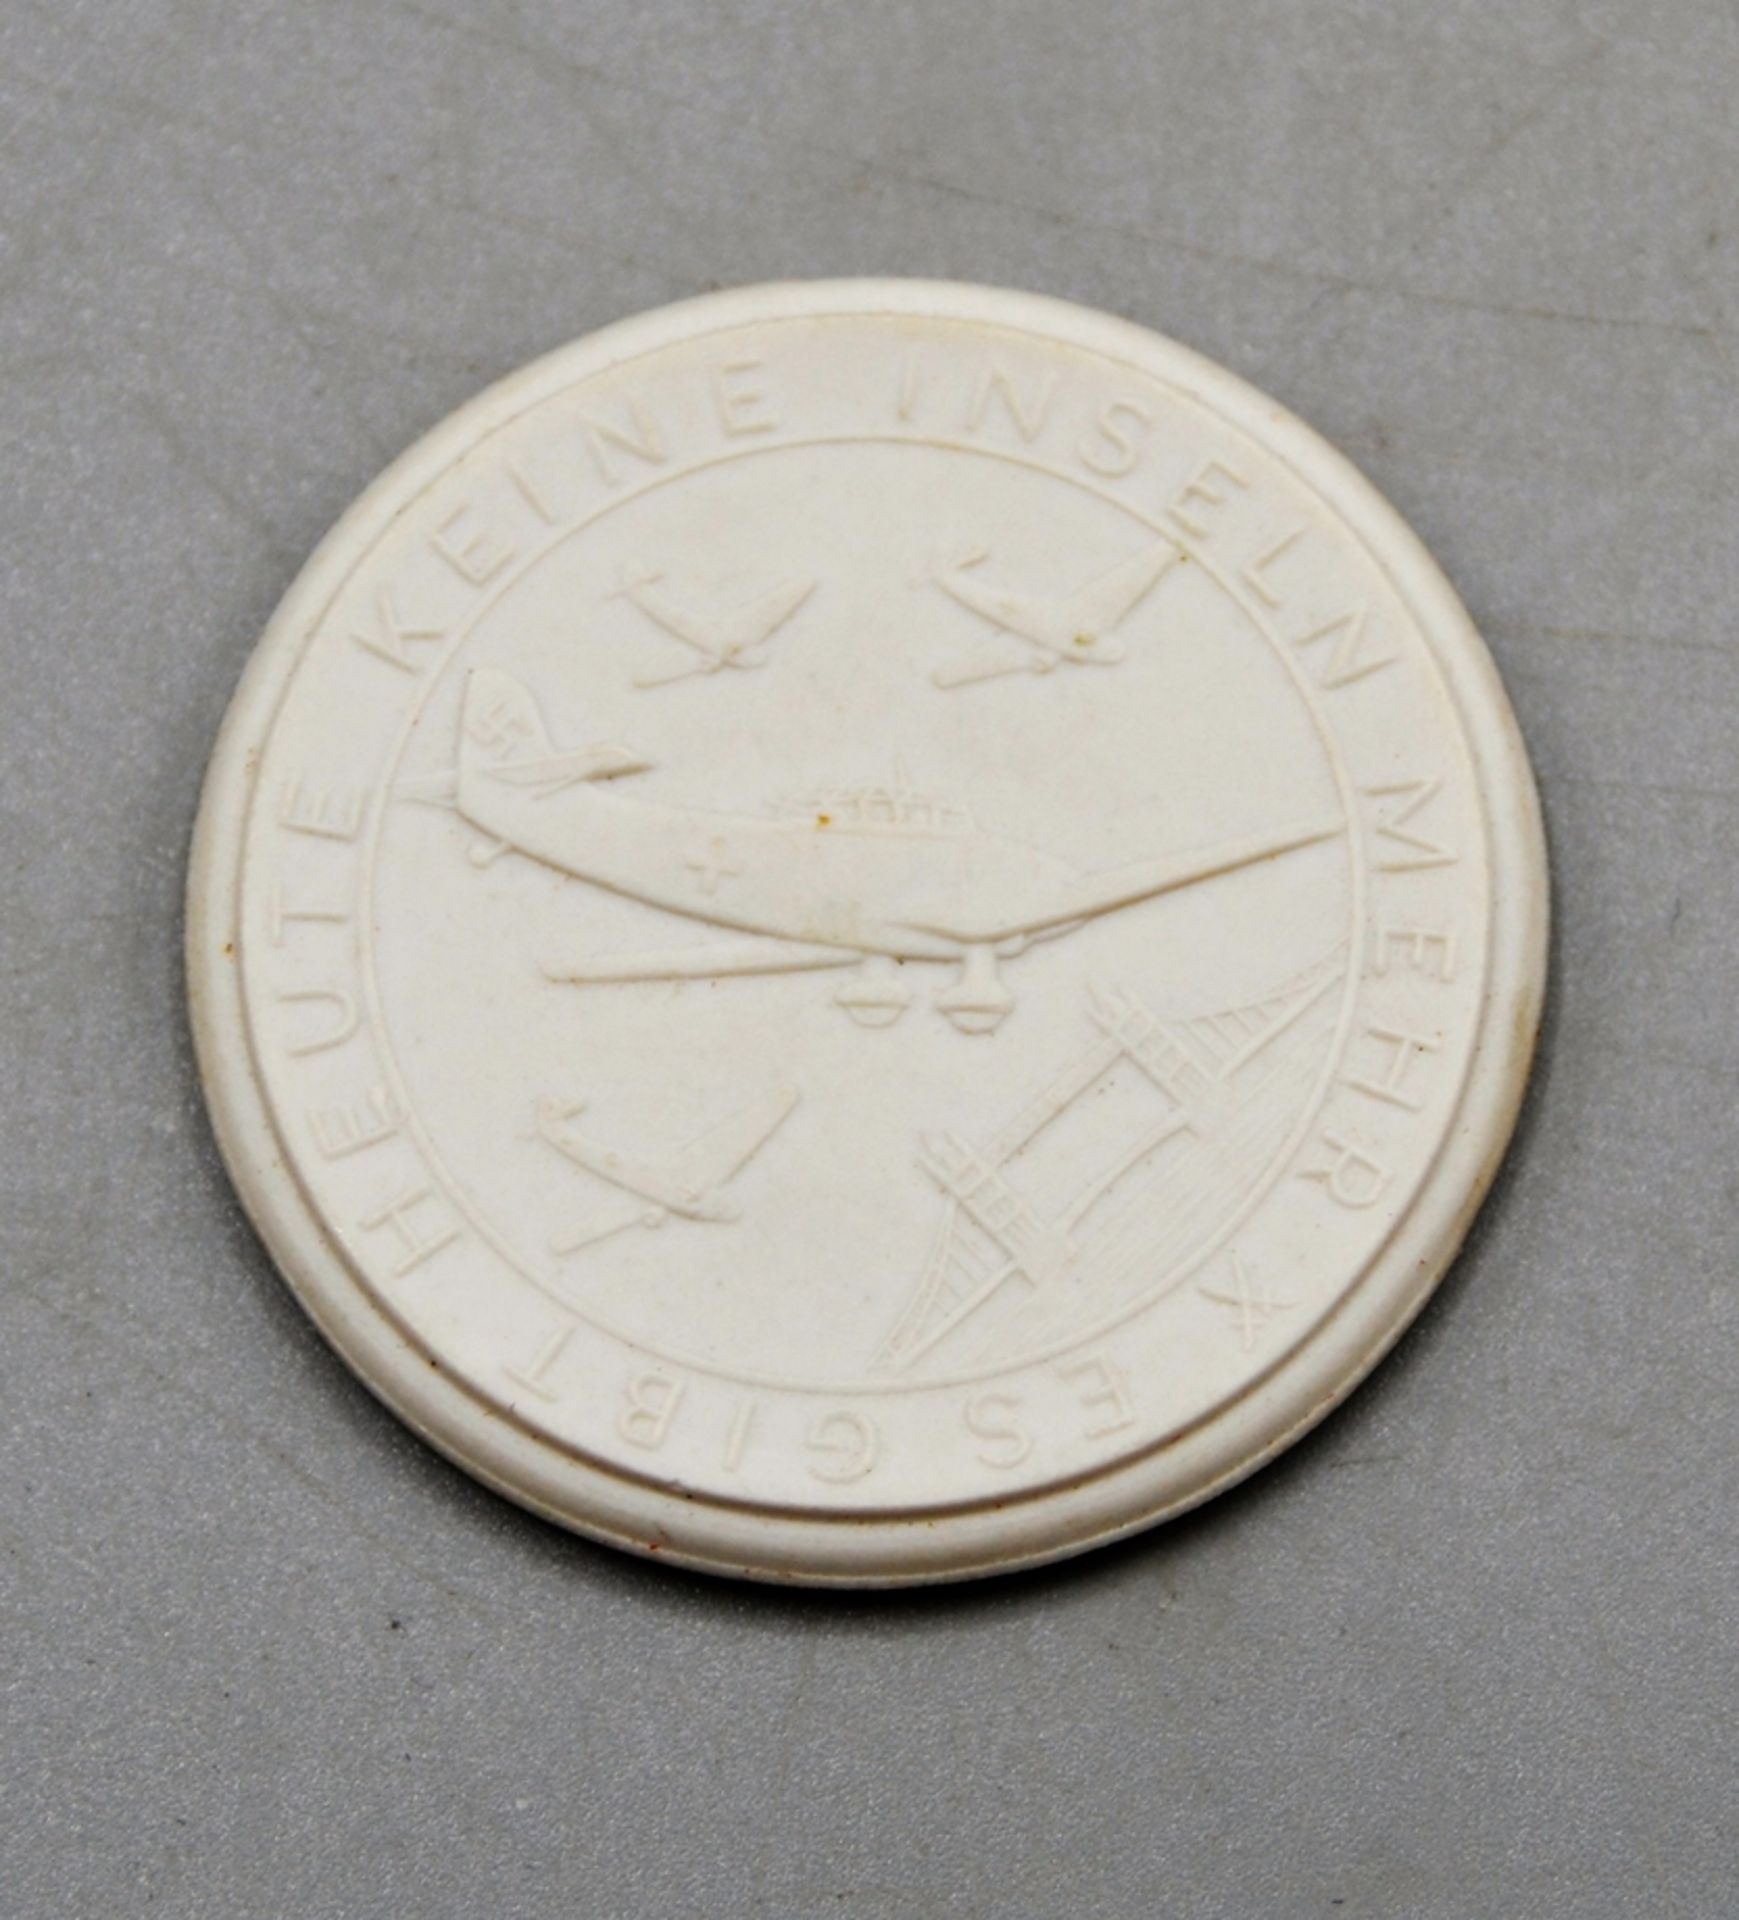 Meissen Porzellan Medaille Plakette 1941 "Flieger gegen England" WKII, Scheuch Nr. 1877, selten, Ø 